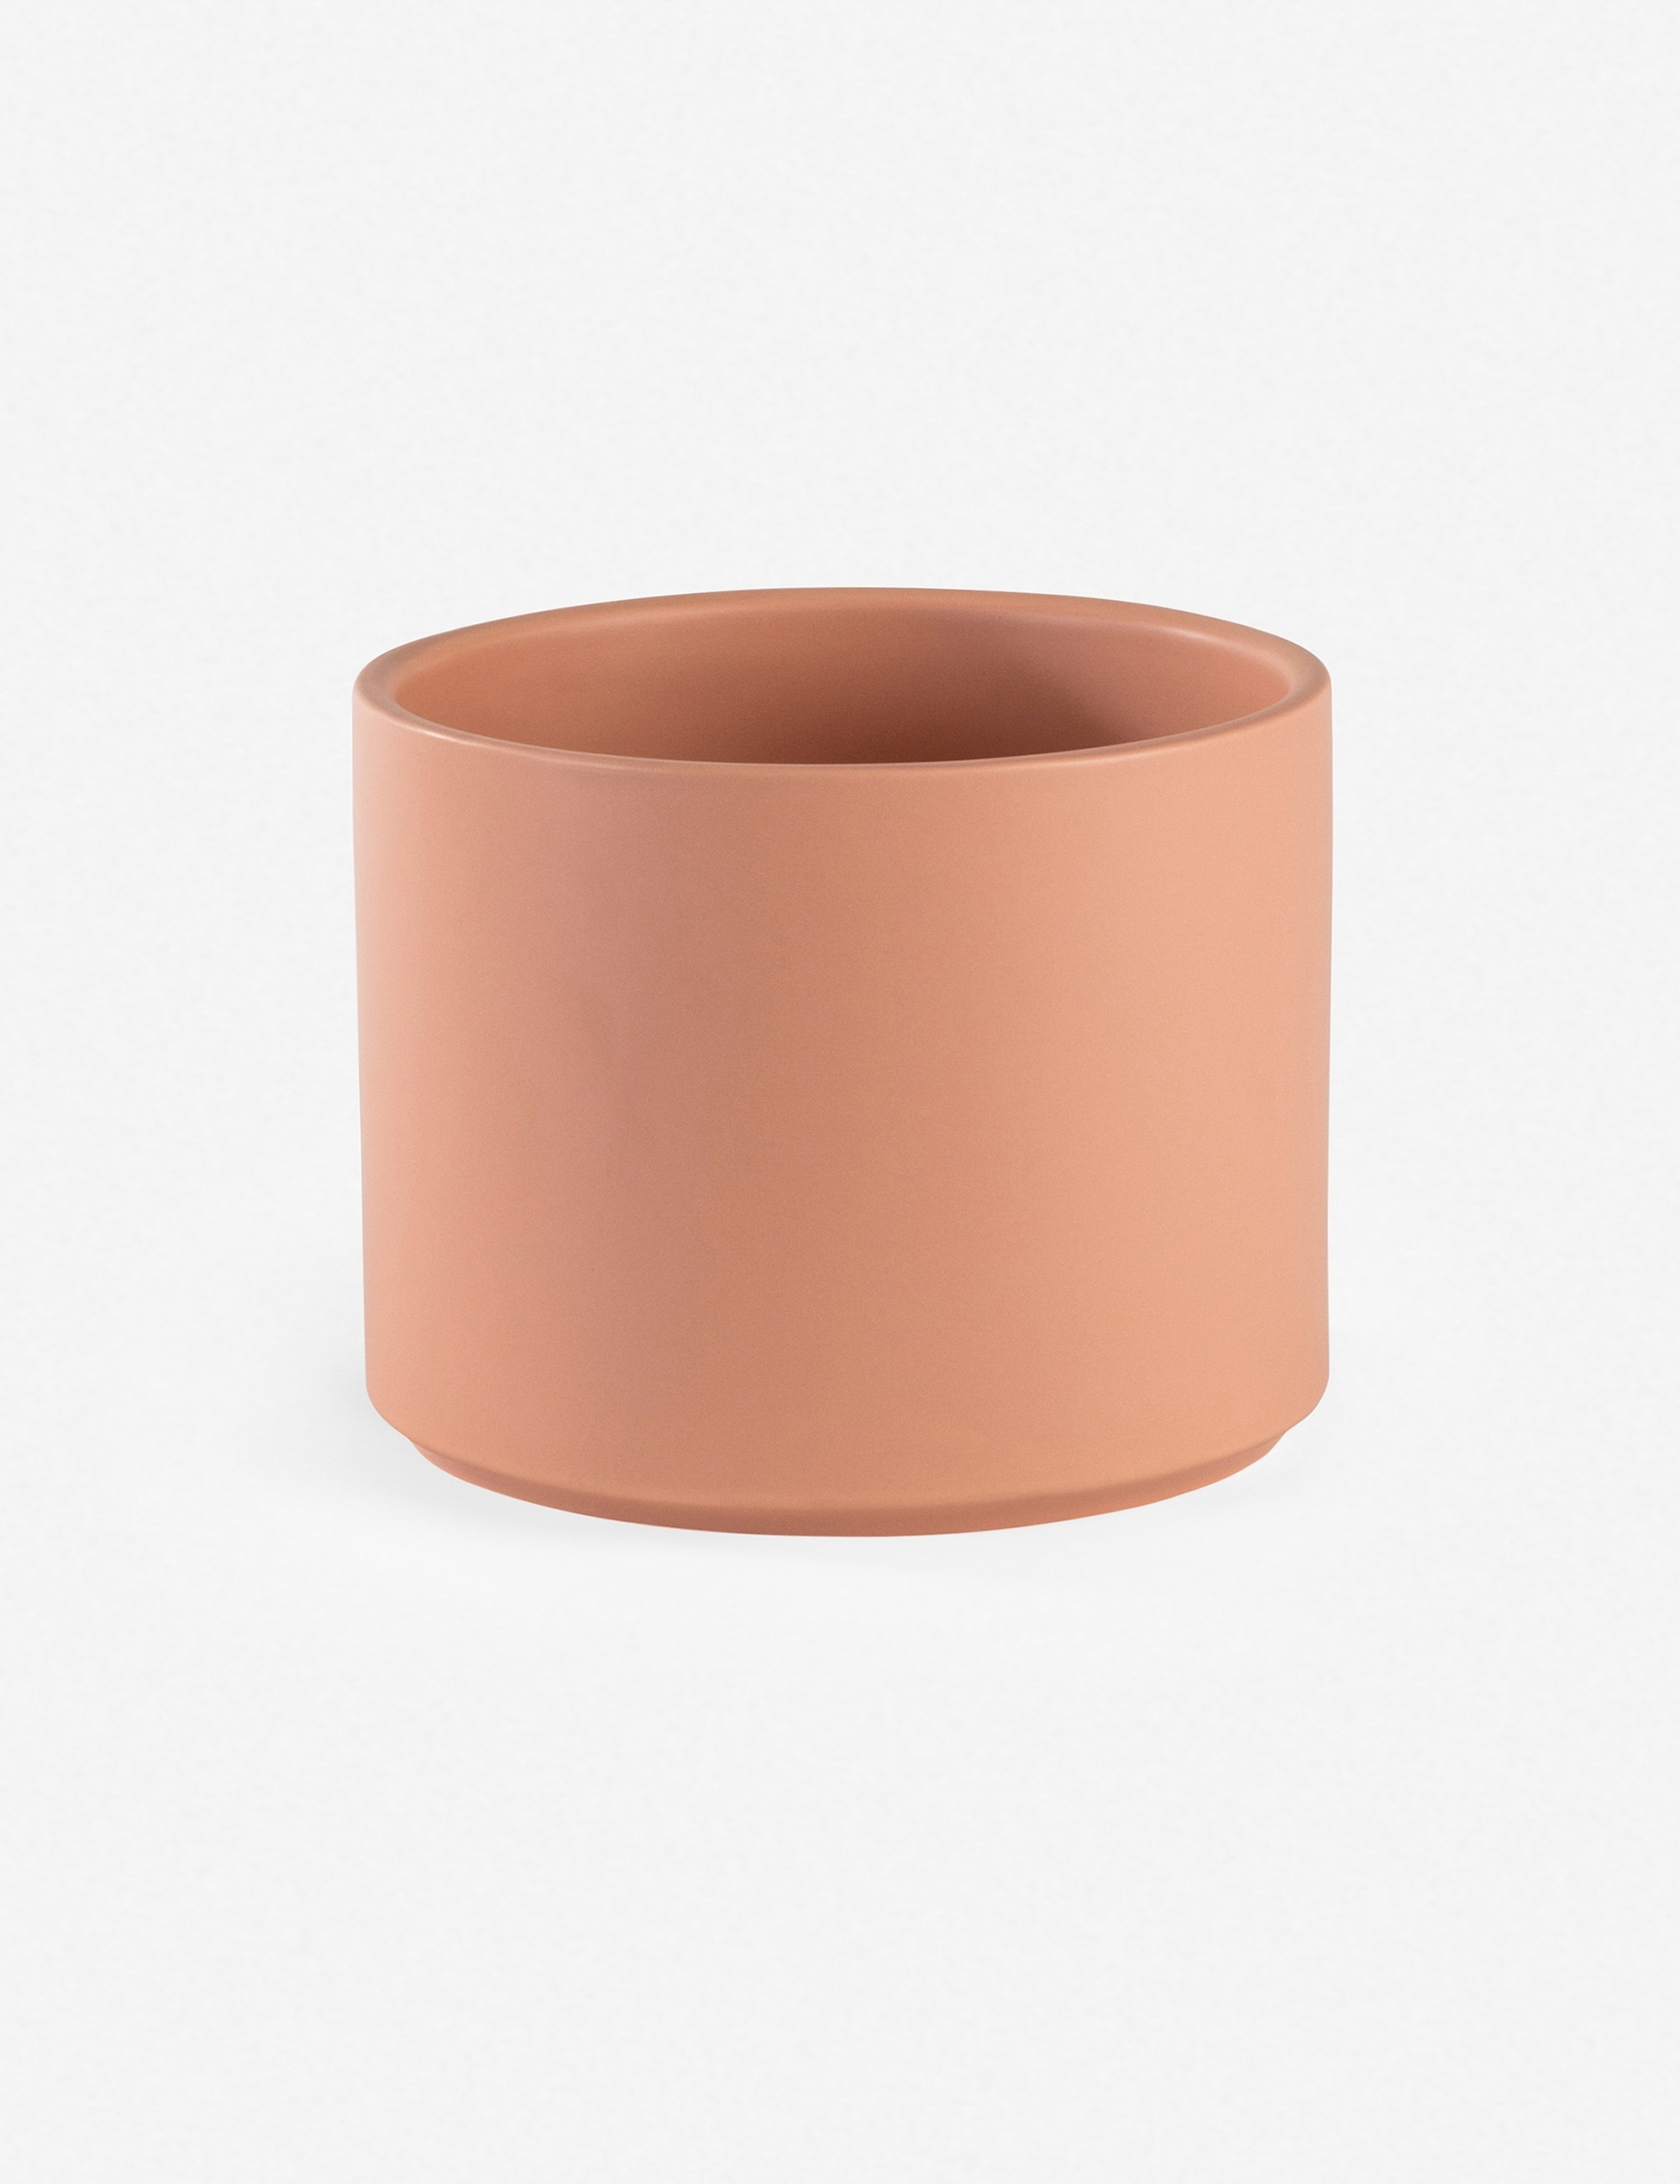 LBE Design Ceramic Planter, Peach 18"Dia x 20"H - with stand - Image 1